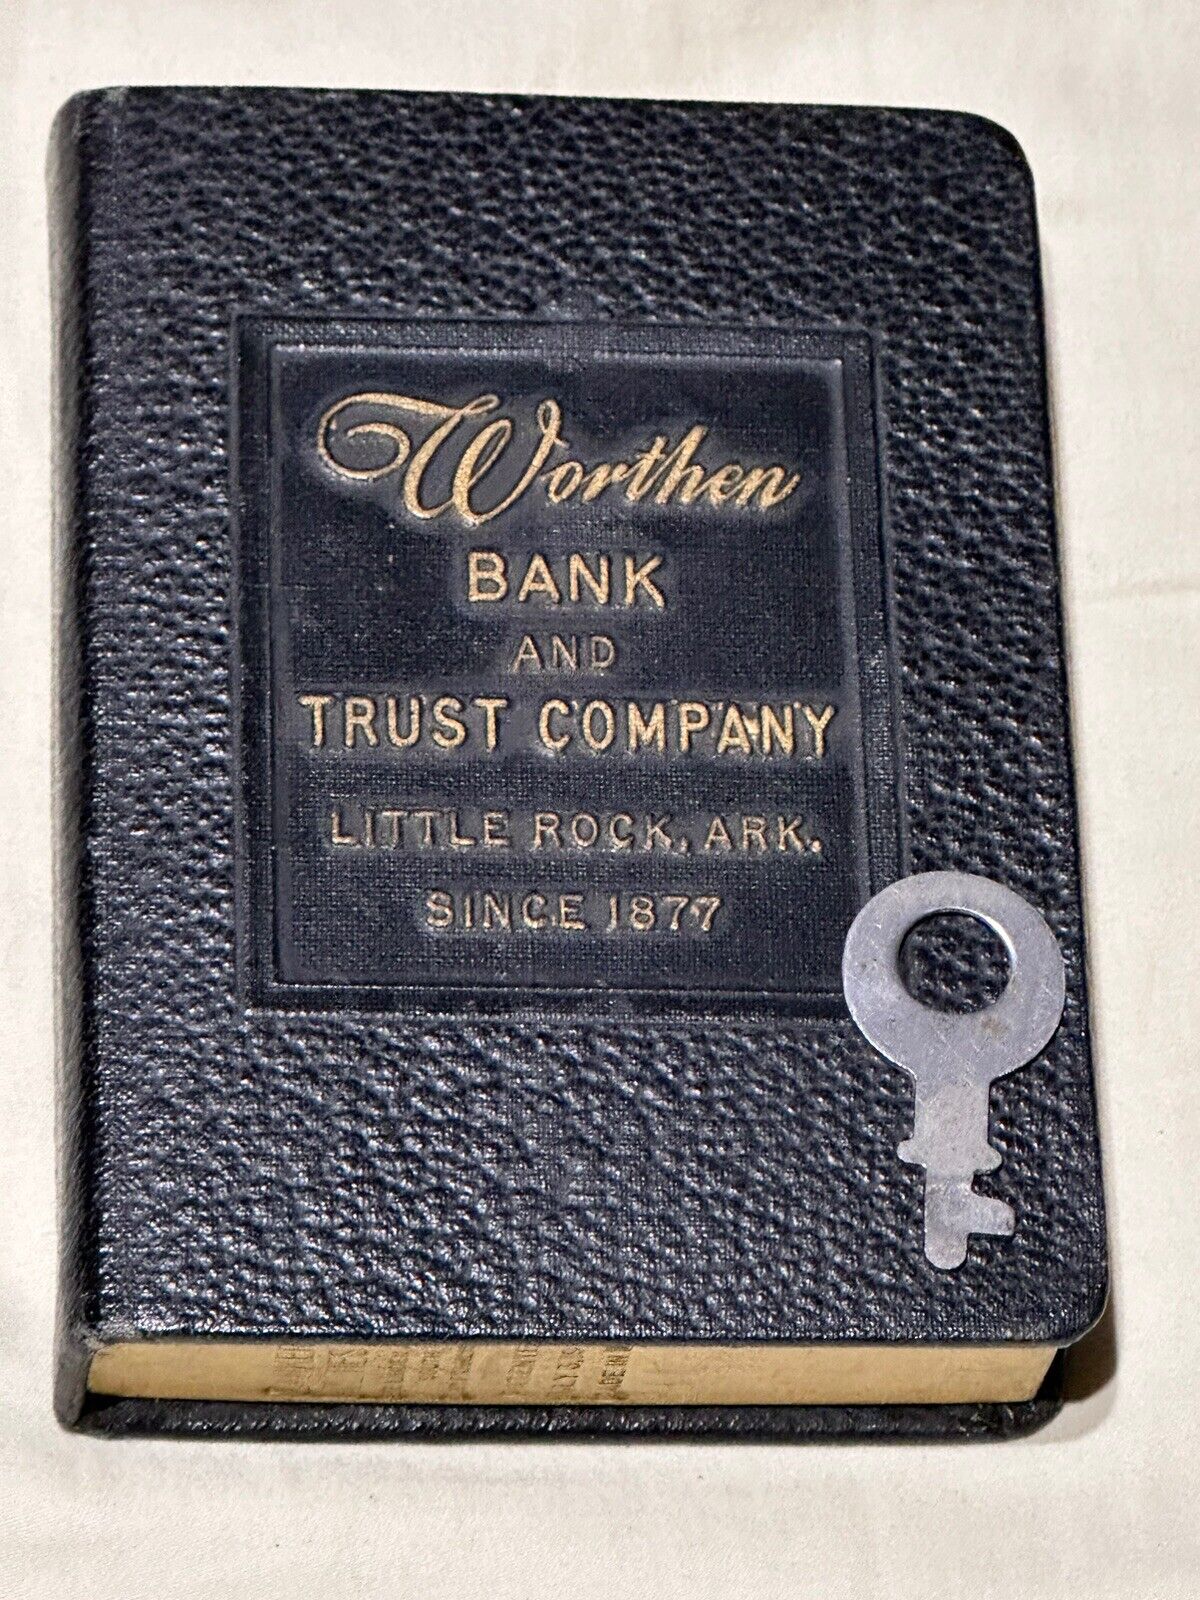 1923 Antique Book Coin Bank Worthen Bank & Trust Little Rock Arkansas W Key